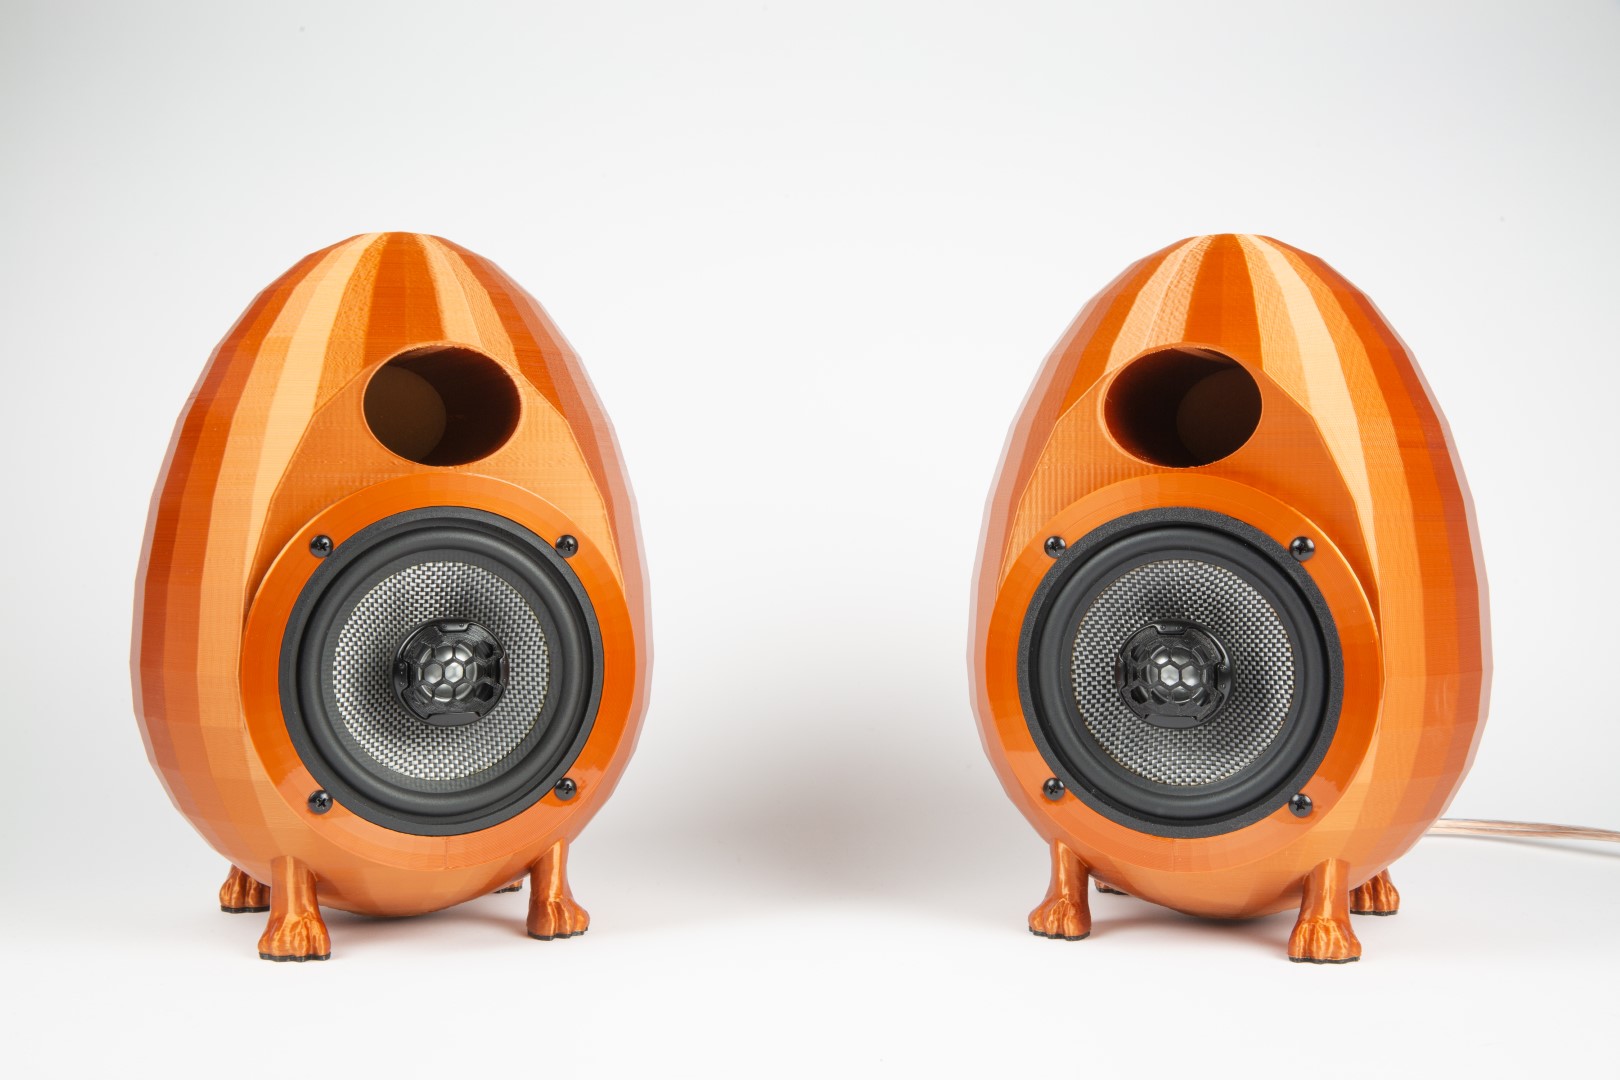 3D Printed Egg Speakers